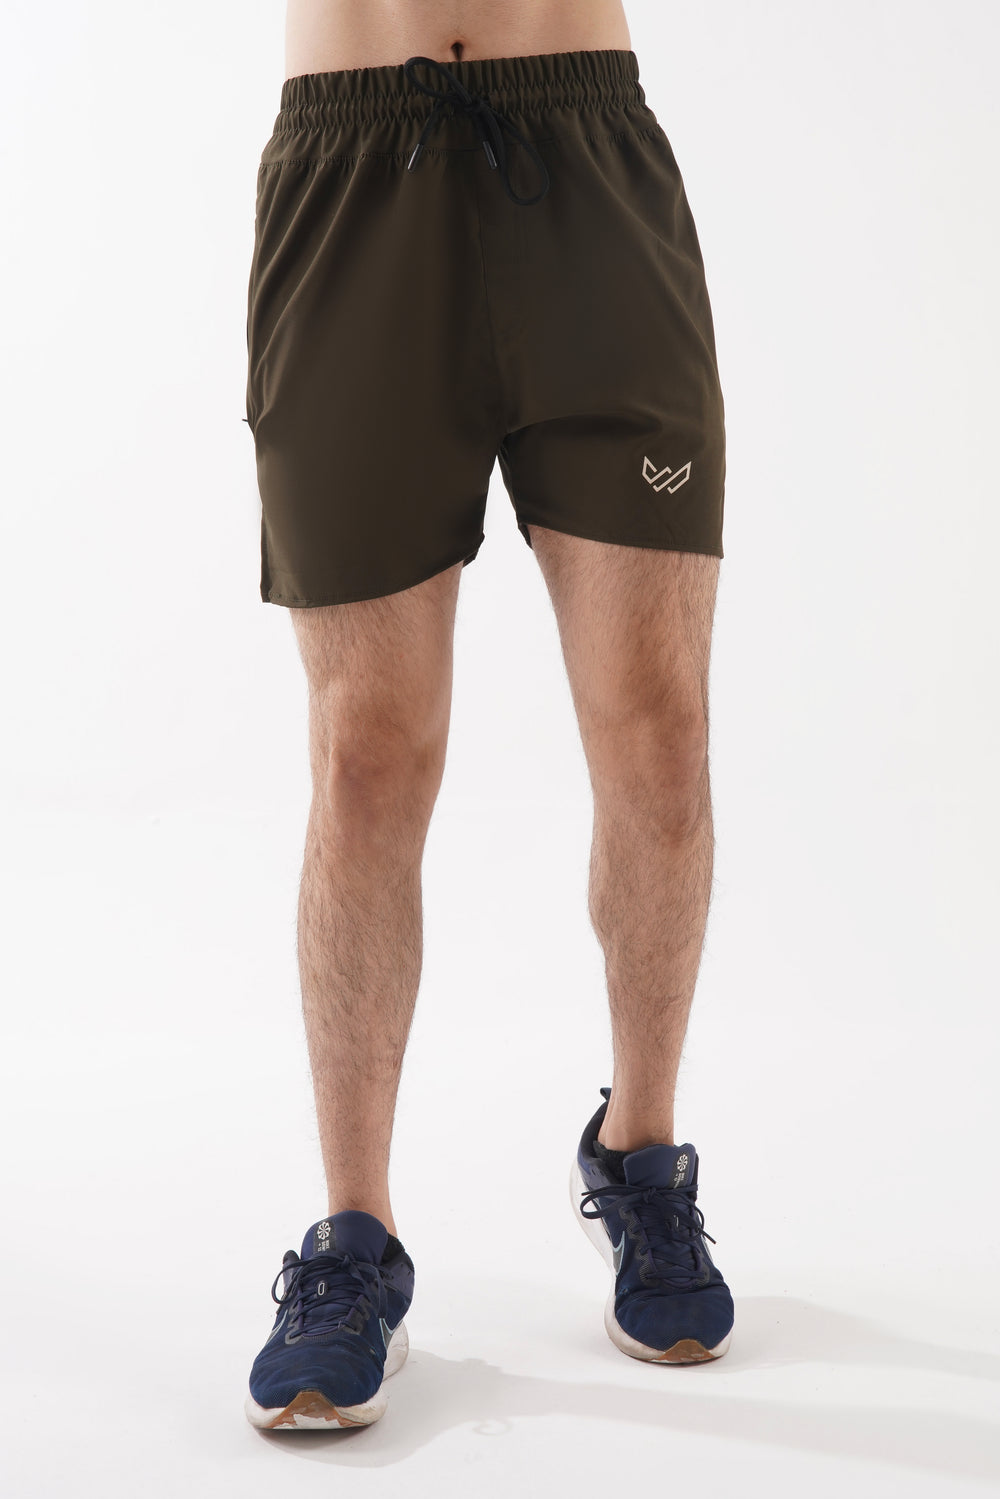 SprintStyle Training Shorts - Olive